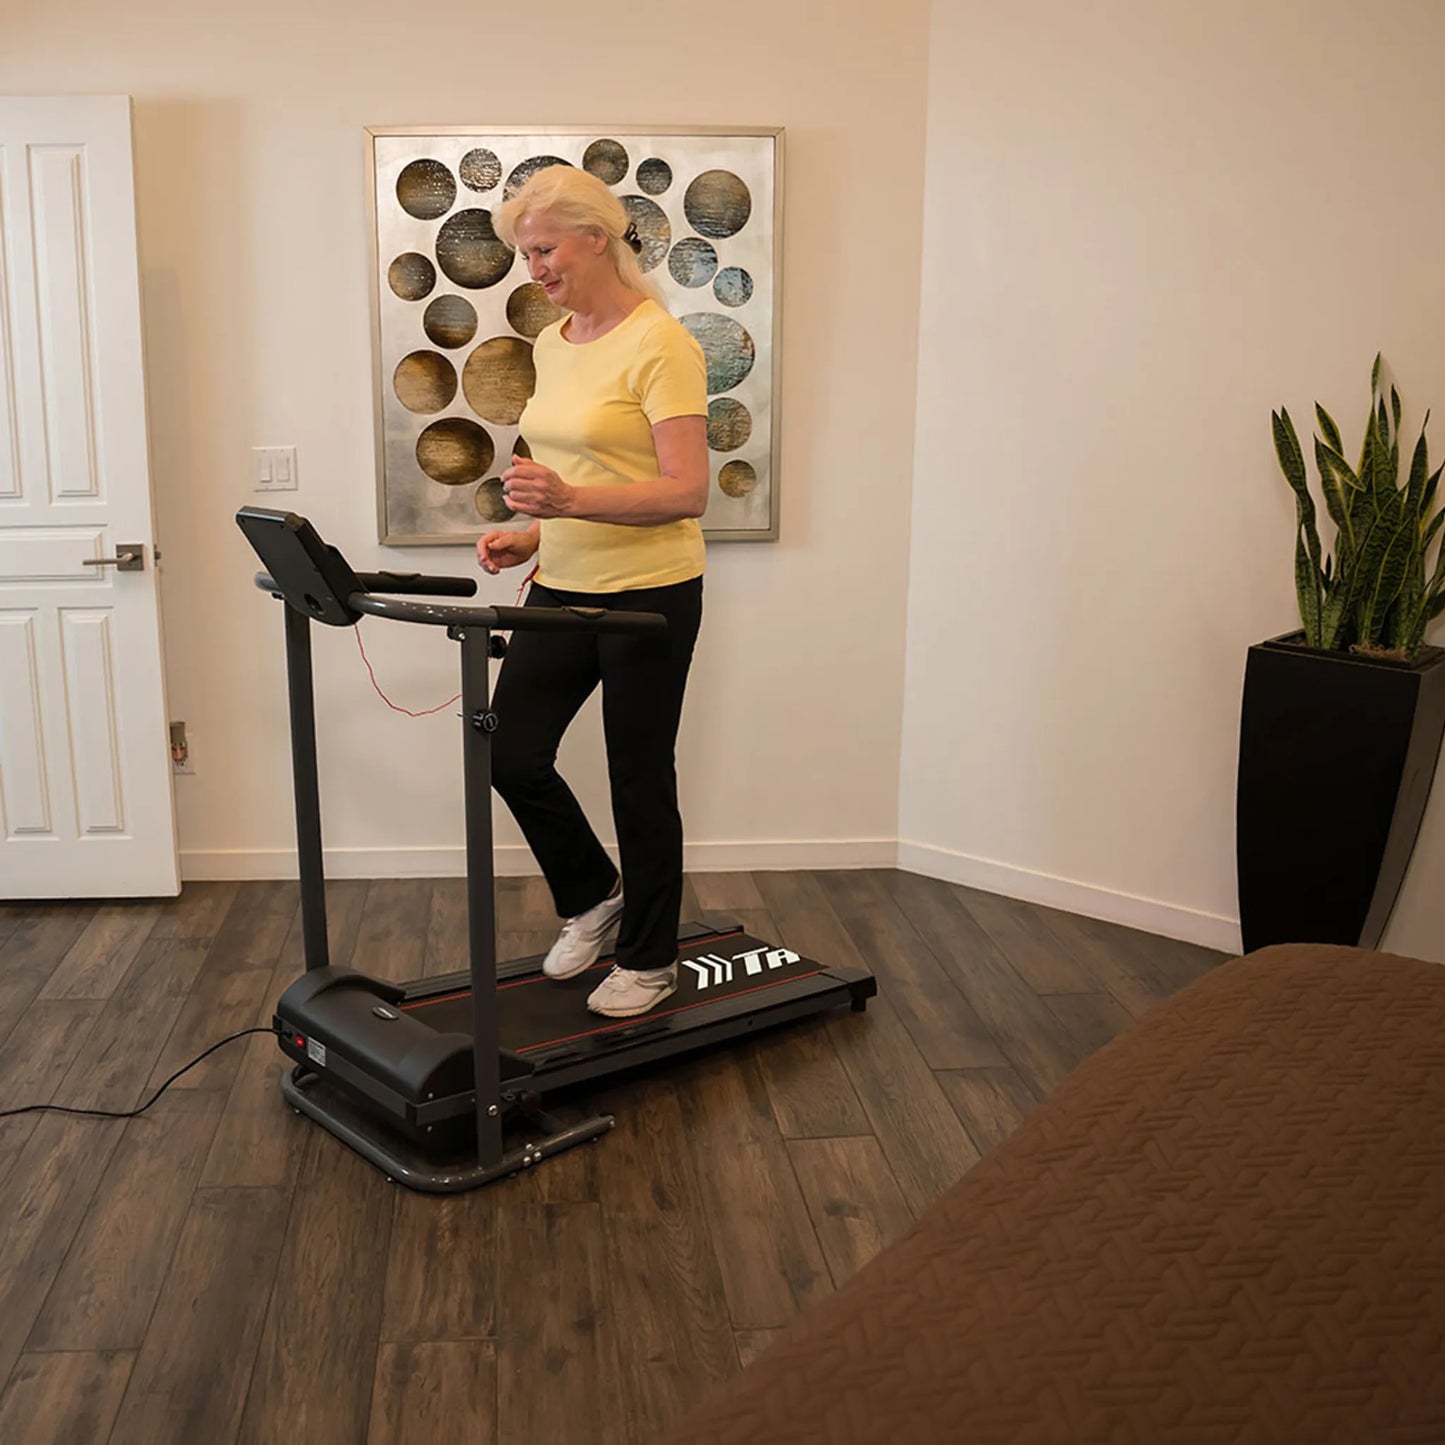 Gymform® Slim Fold Treadmill - kompaktes, zusammenklappbares Laufband, Fitnessgerät 6 km/h, 3 Programme sowie 3 variabel einstellbare Geschwindigkeiten bis 110 kg – Aus der TV Werbung